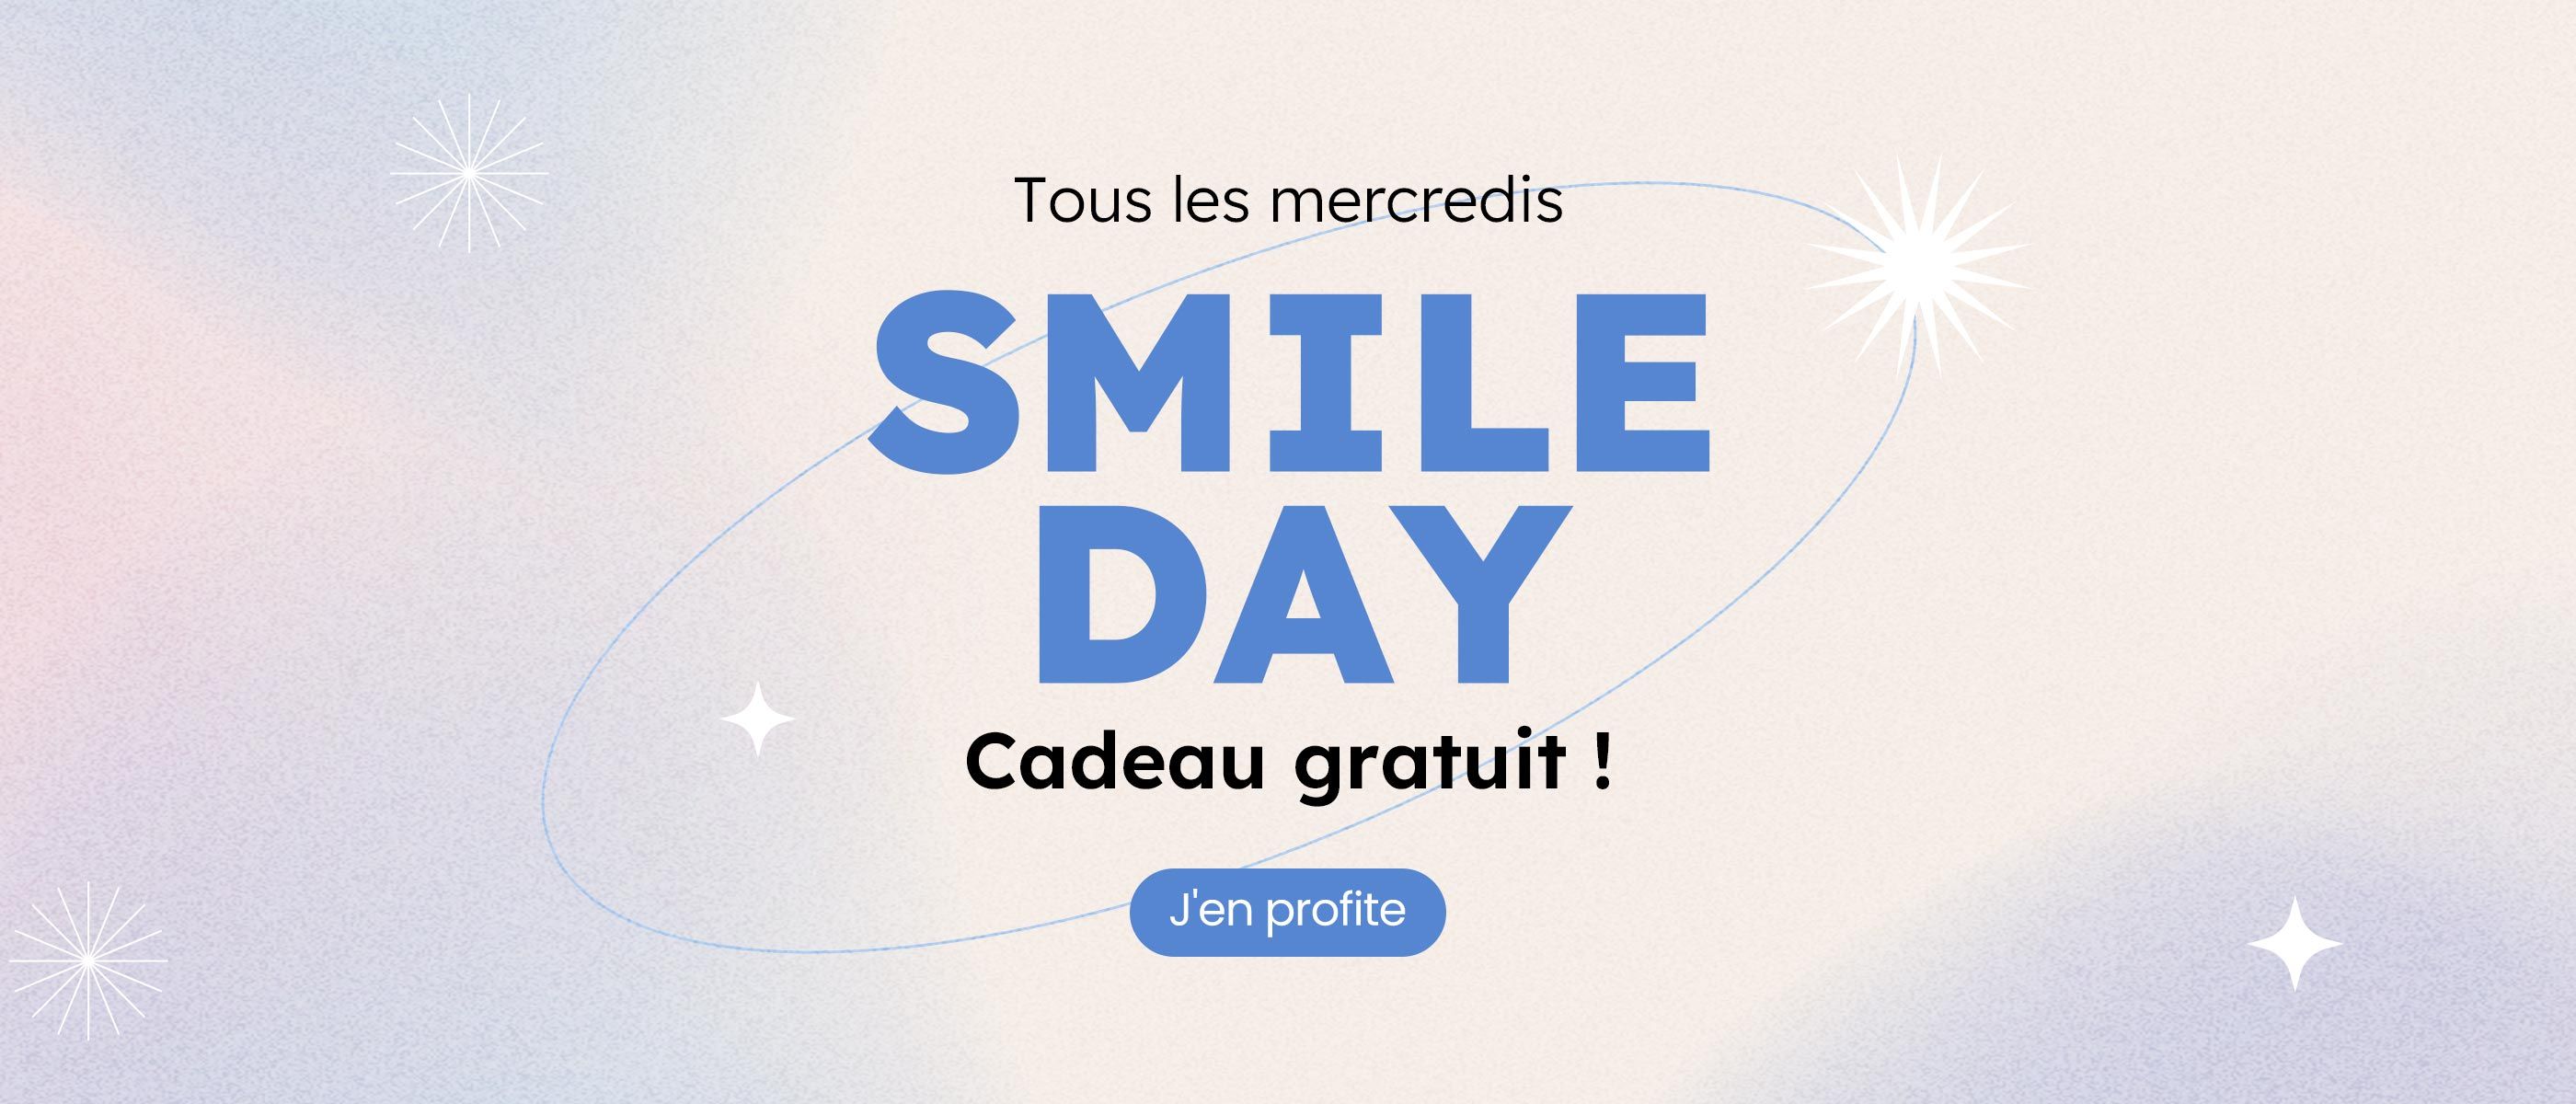 Click it to join Votre fidélité récompensée！ activity